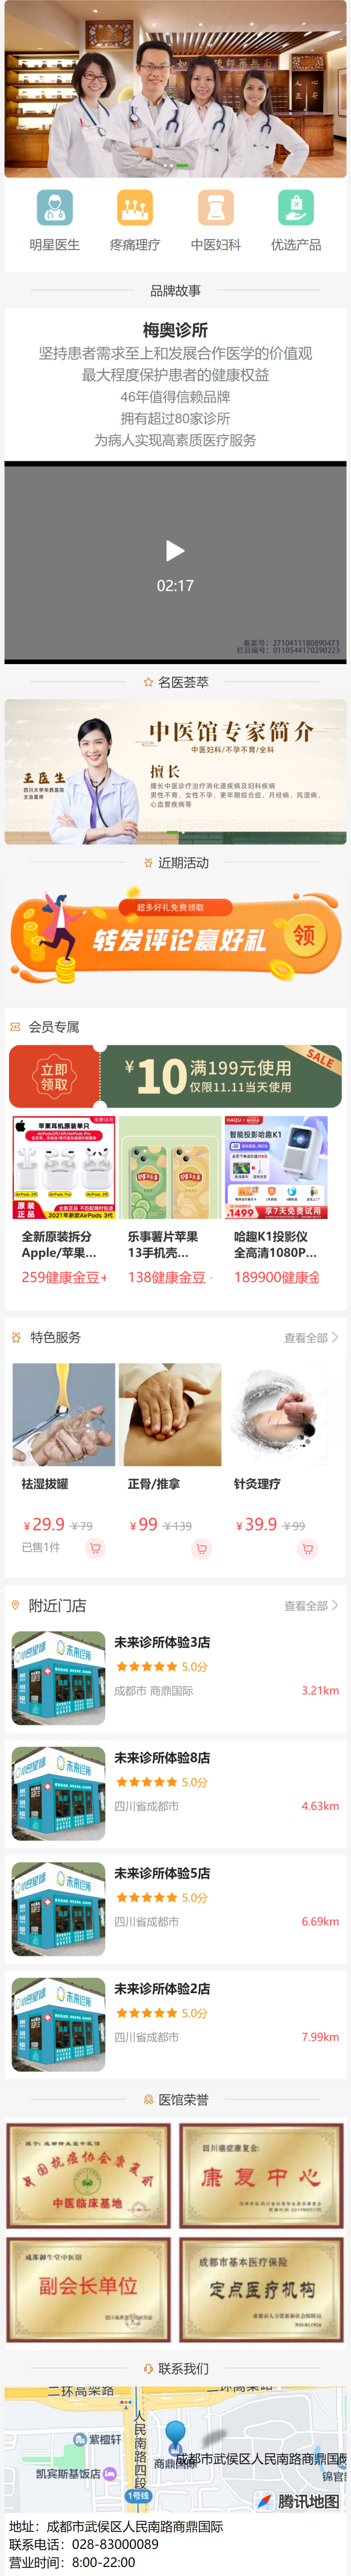 shop.yizhu101.com_h5_7.html(iPhone 12 Pro) (1)(1).png